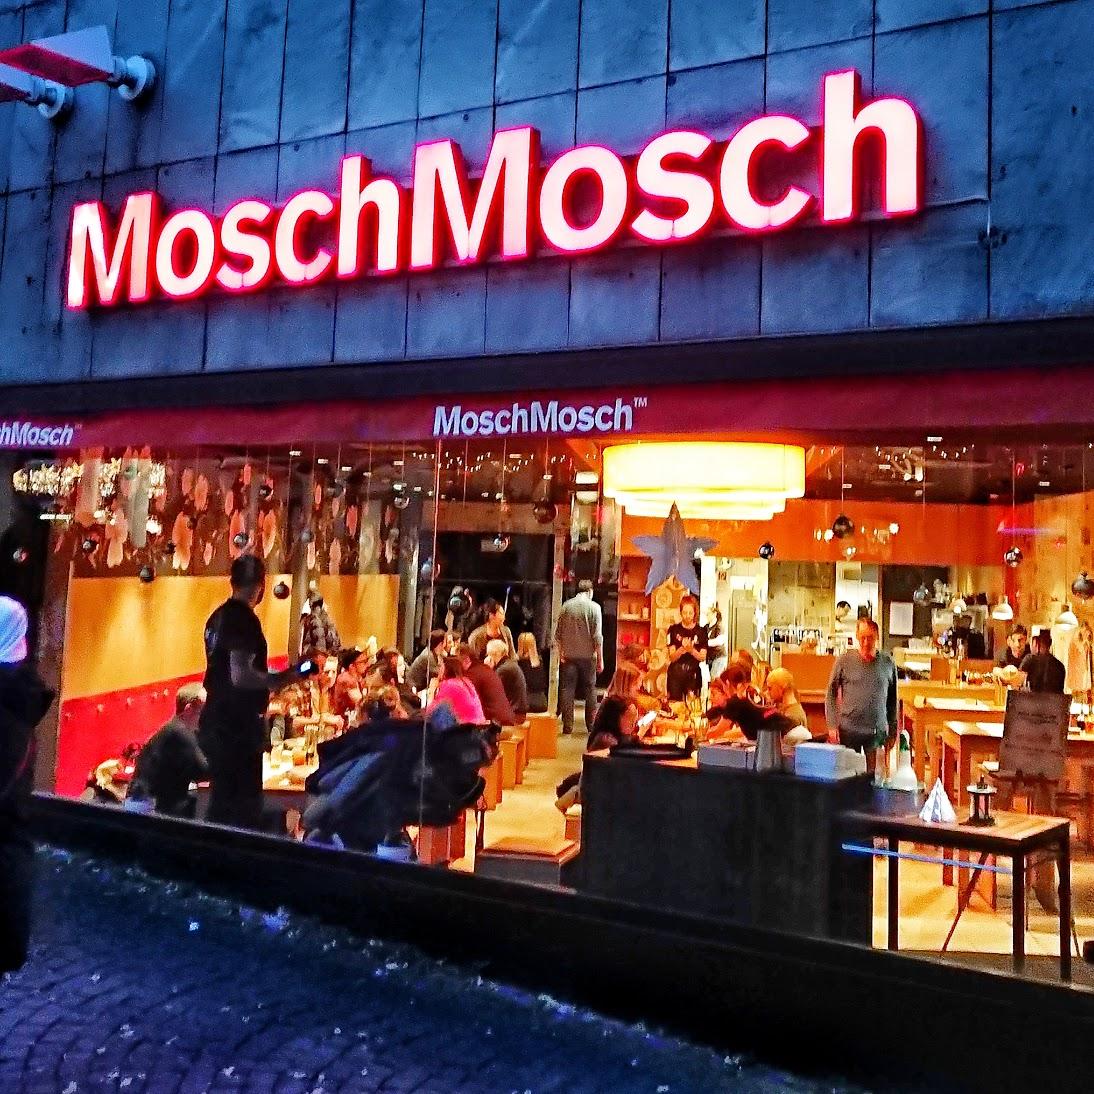 Restaurant "MoschMosch" in  Mainz